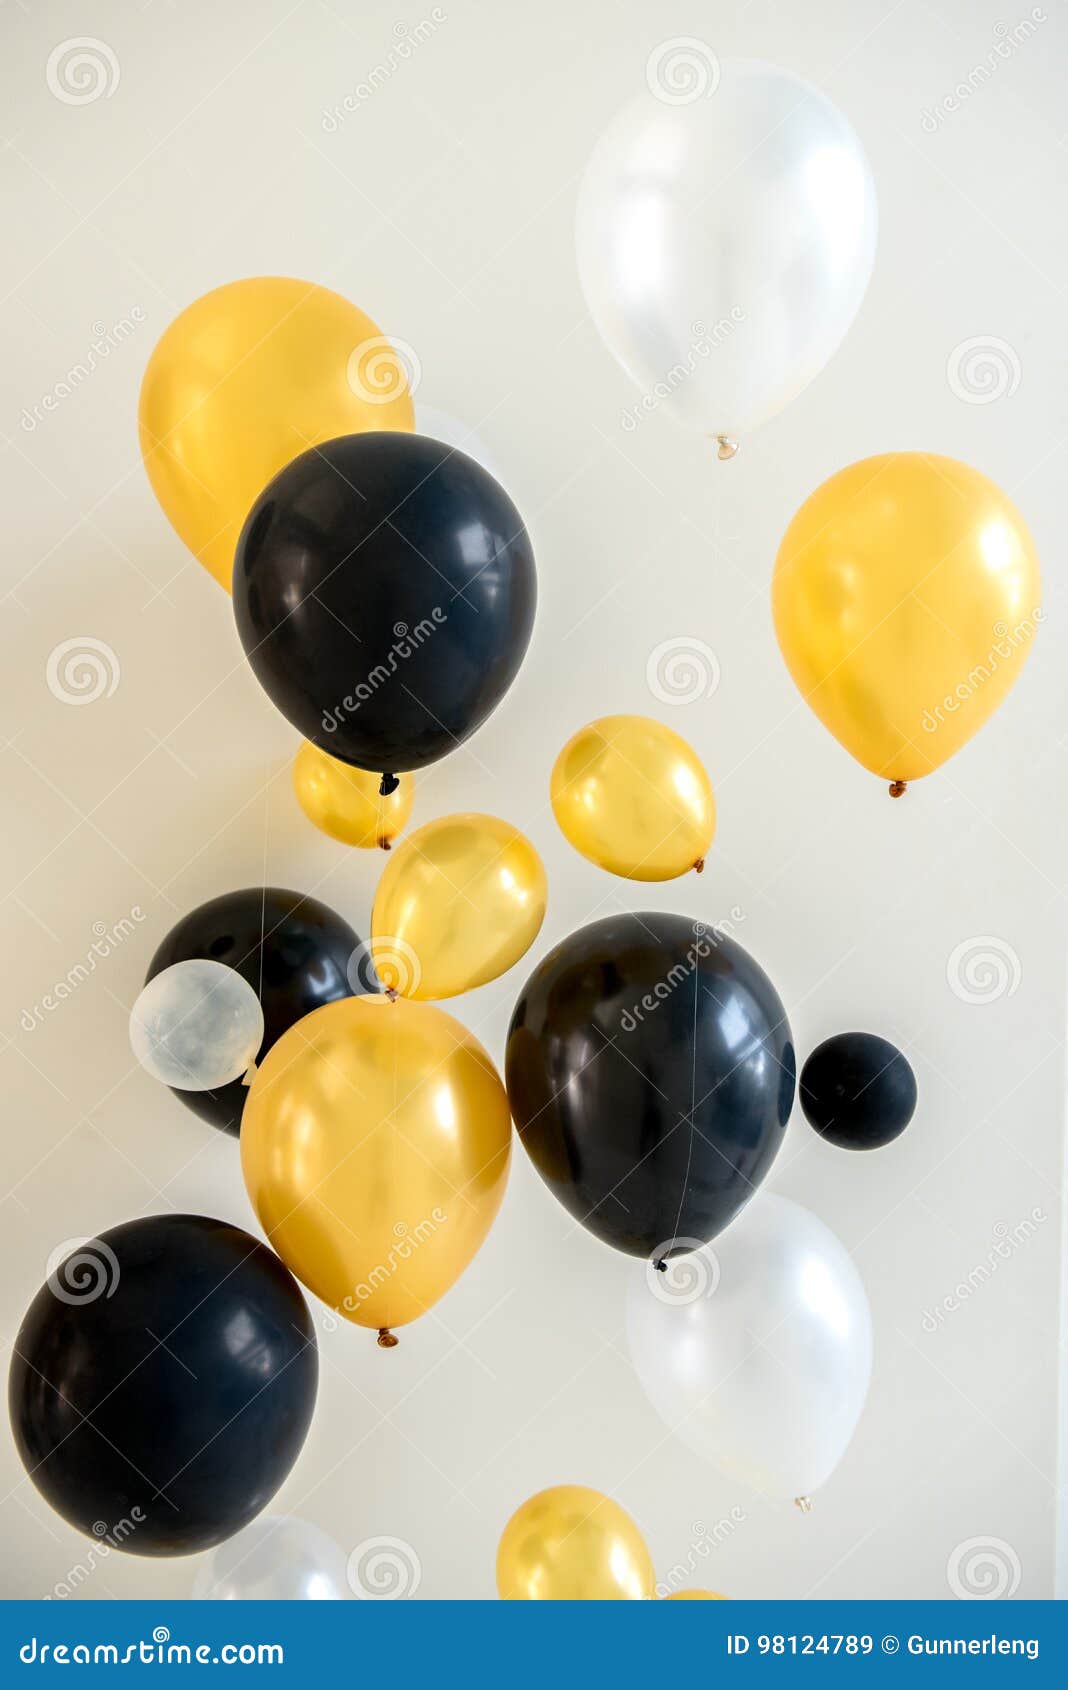 PSD по запросу Шаблоны воздушных шаров день рождения